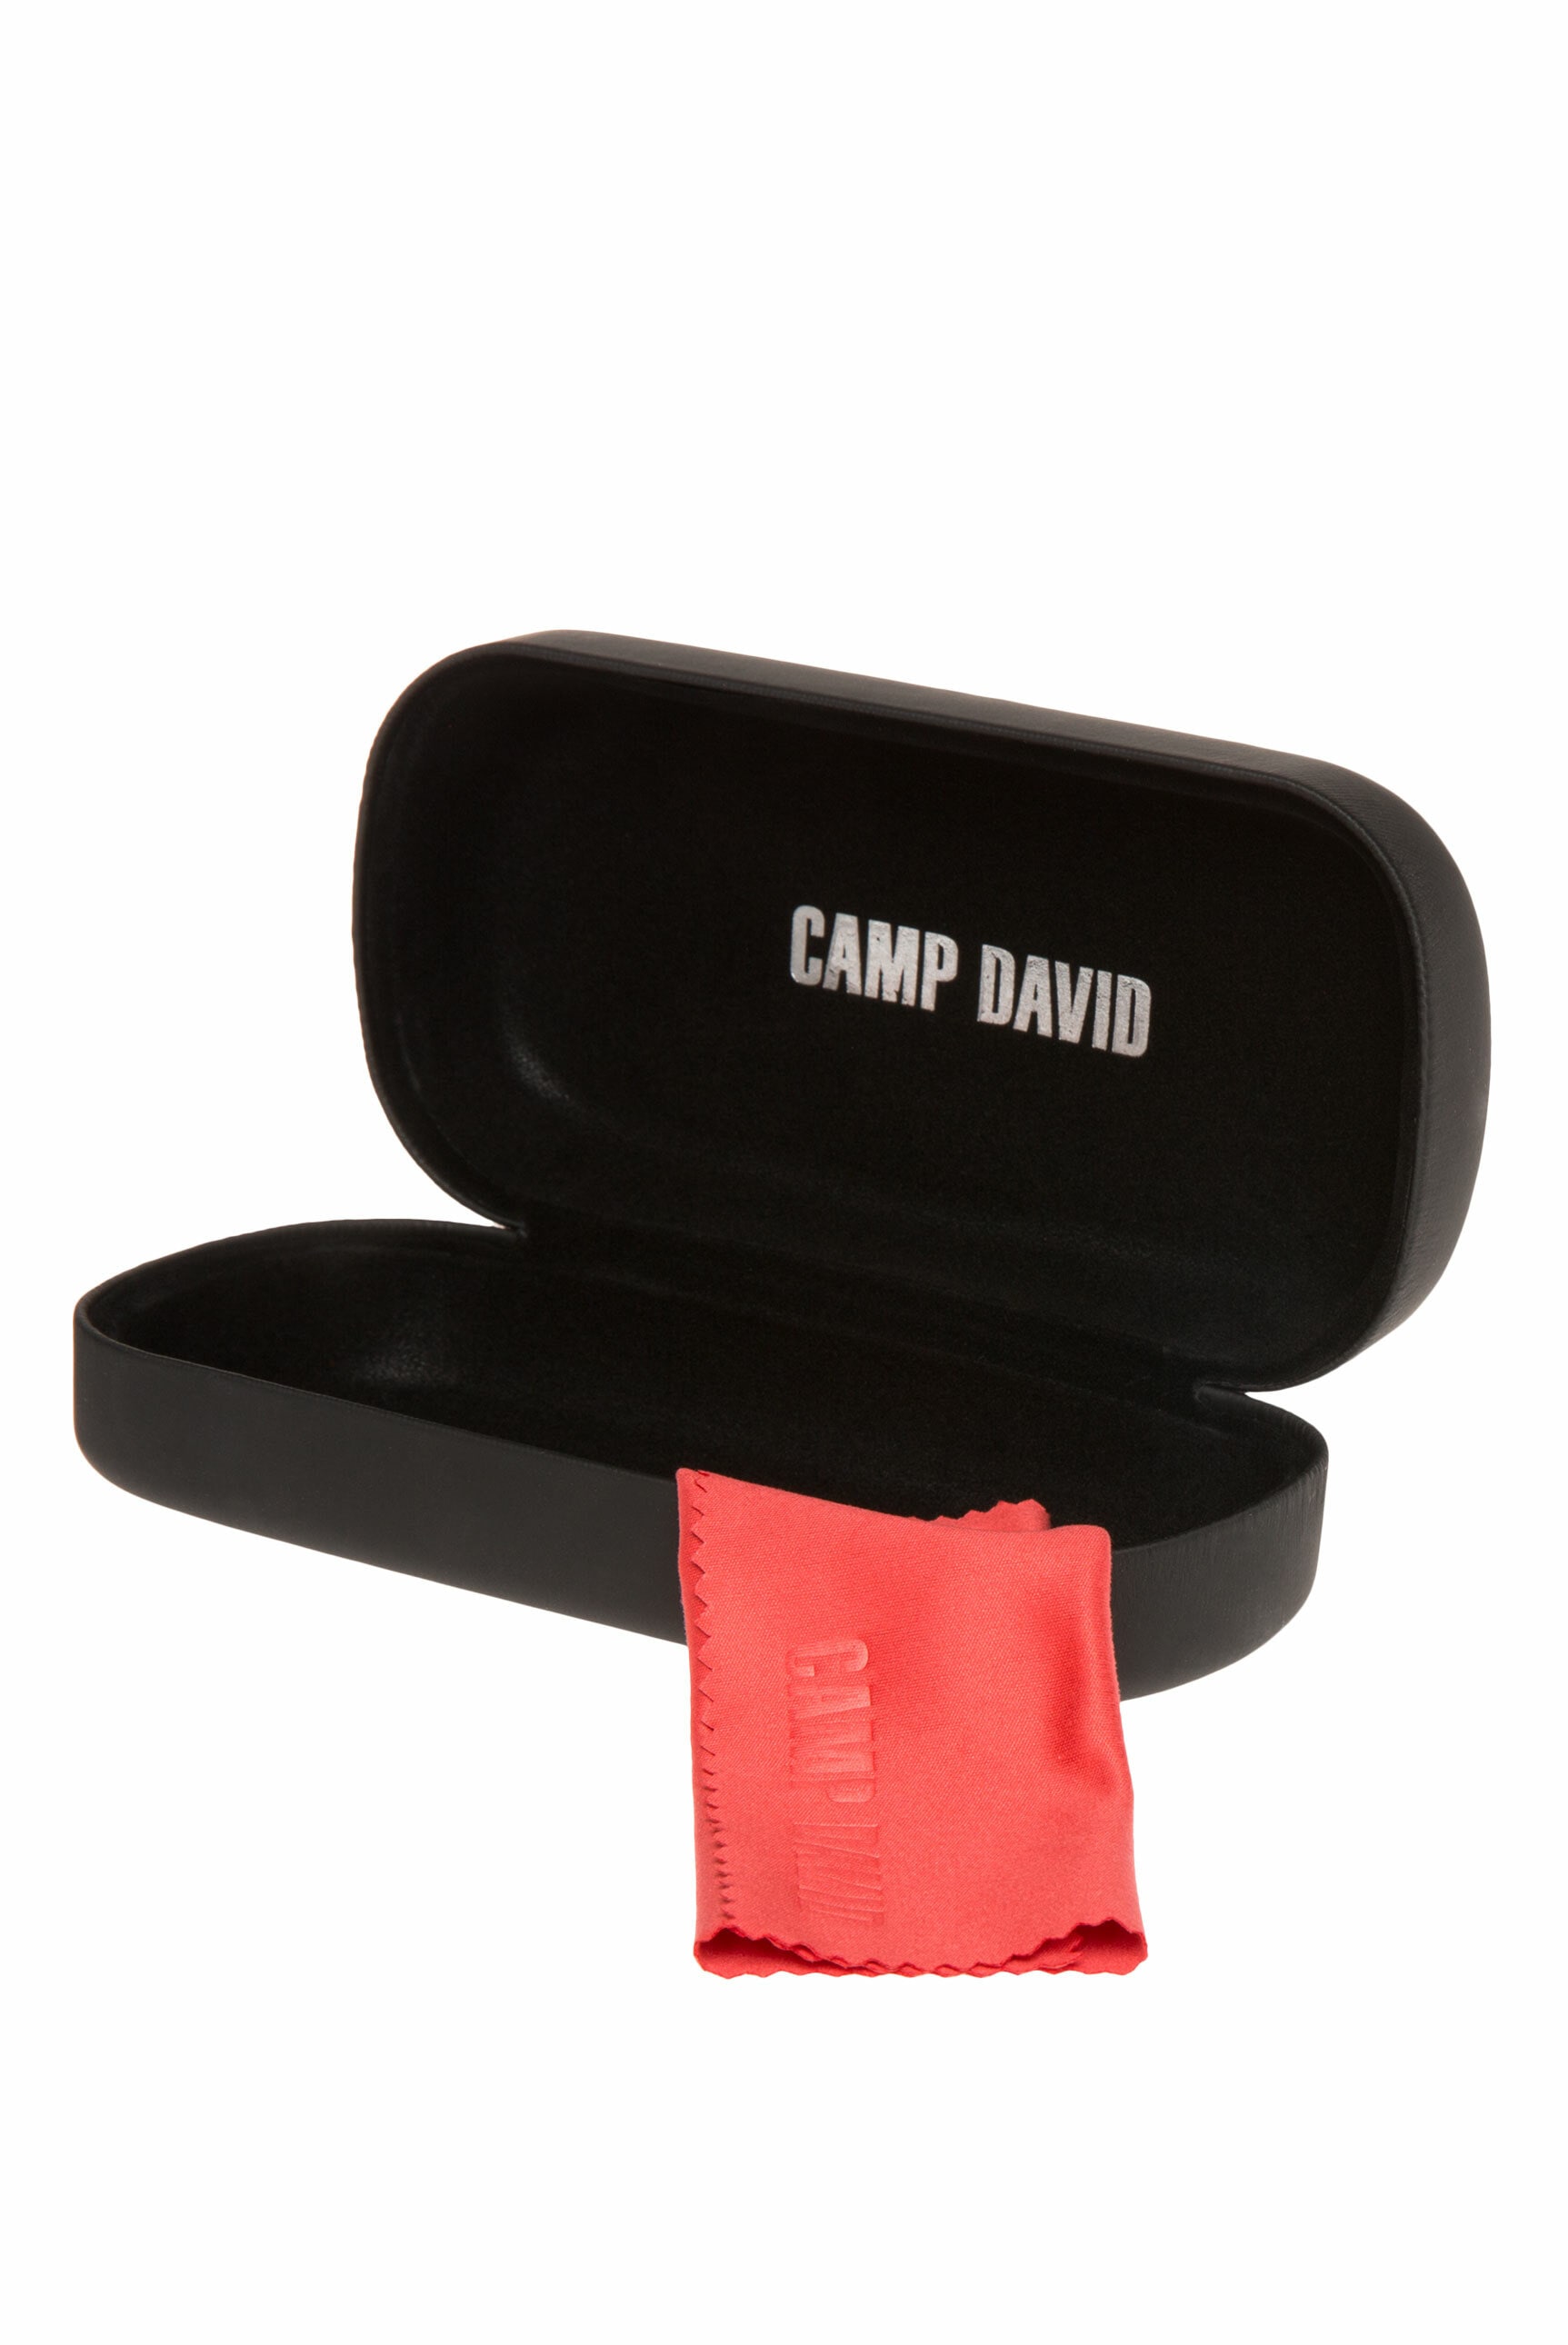 CAMP DAVID online x 15 17 (ca. Sonnenbrille, x kaufen 15 cm), Print